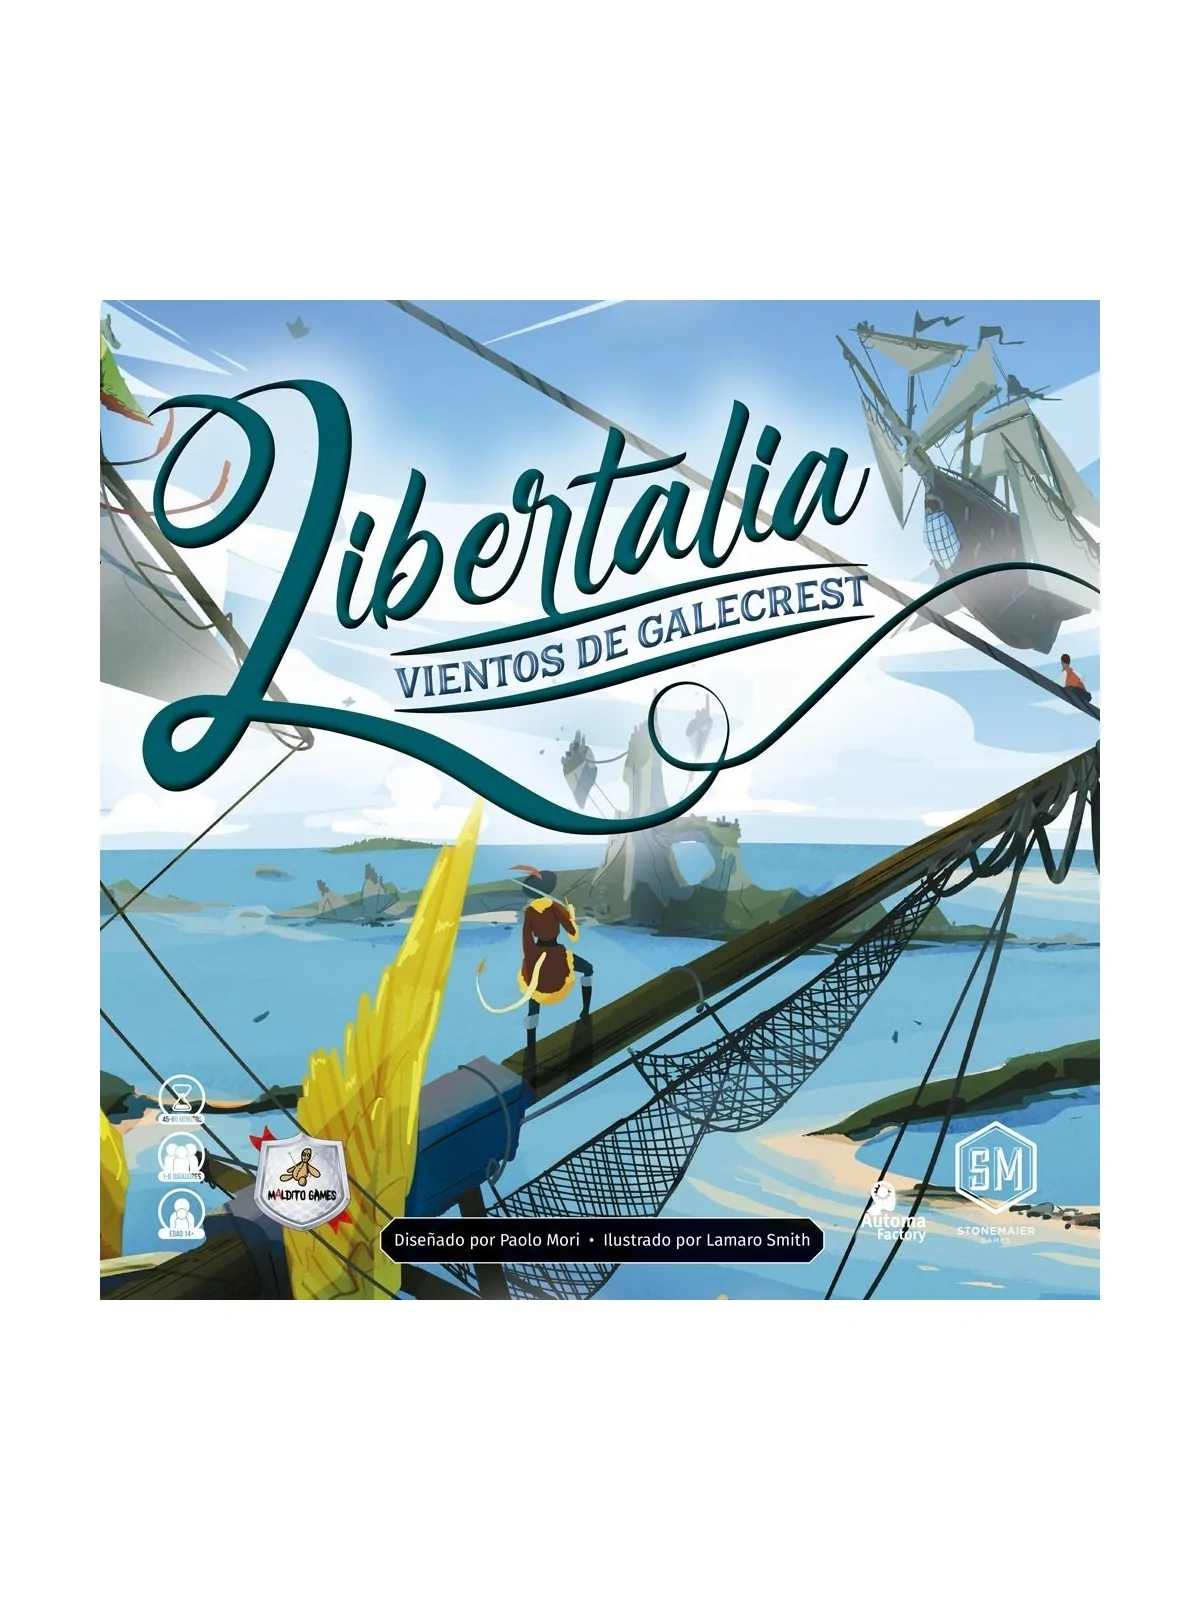 Comprar Libertalia: Vientos de Galecrest barato al mejor precio 49,50 